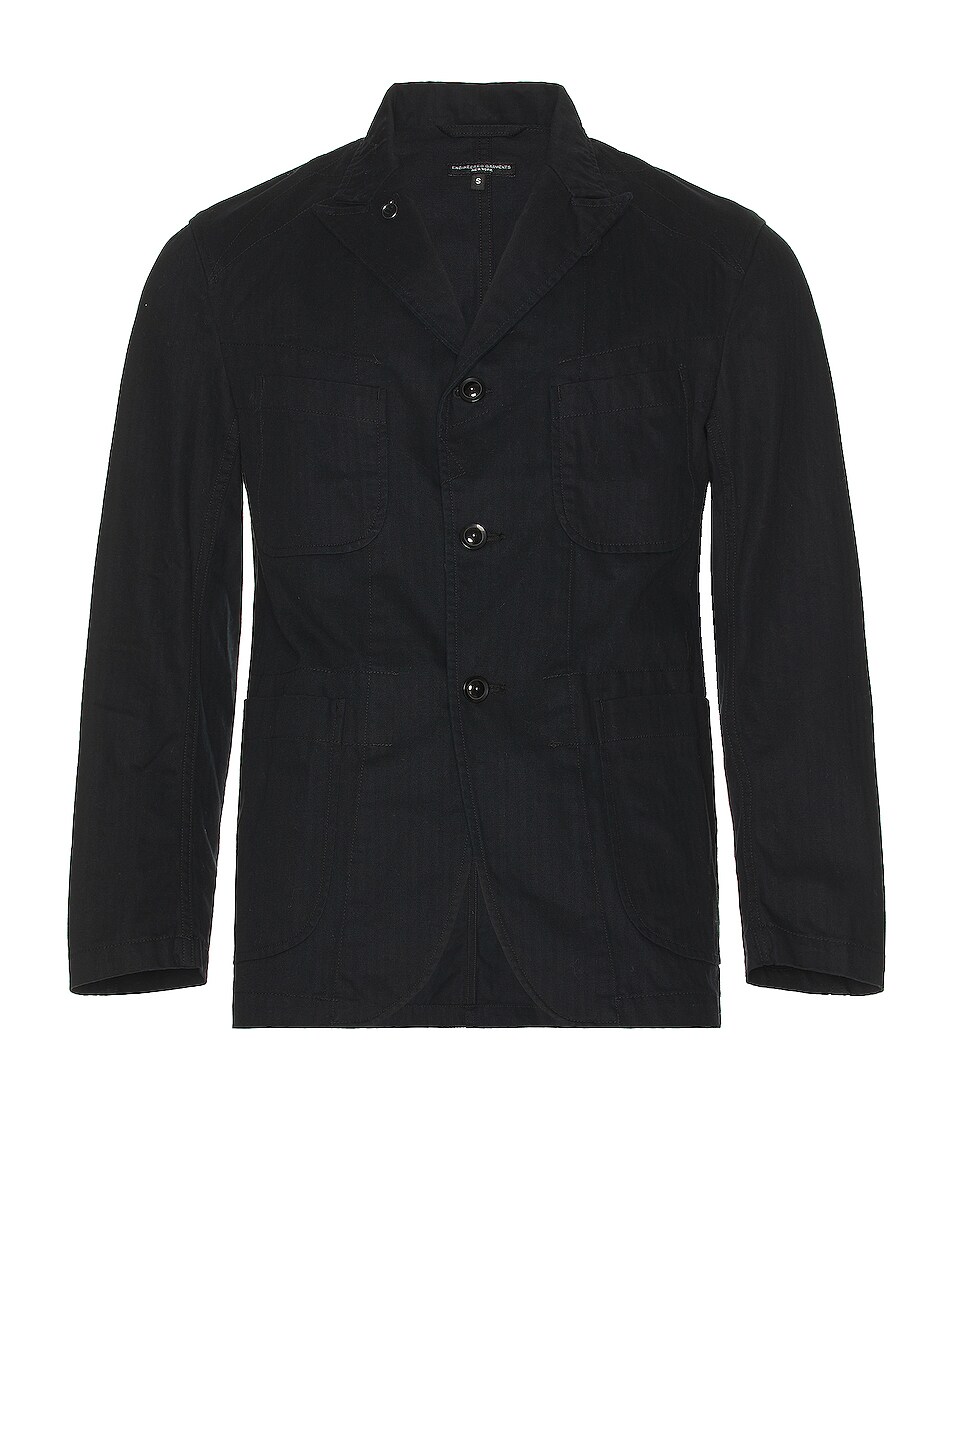 Image 1 of Engineered Garments Bedford Jacket in Black